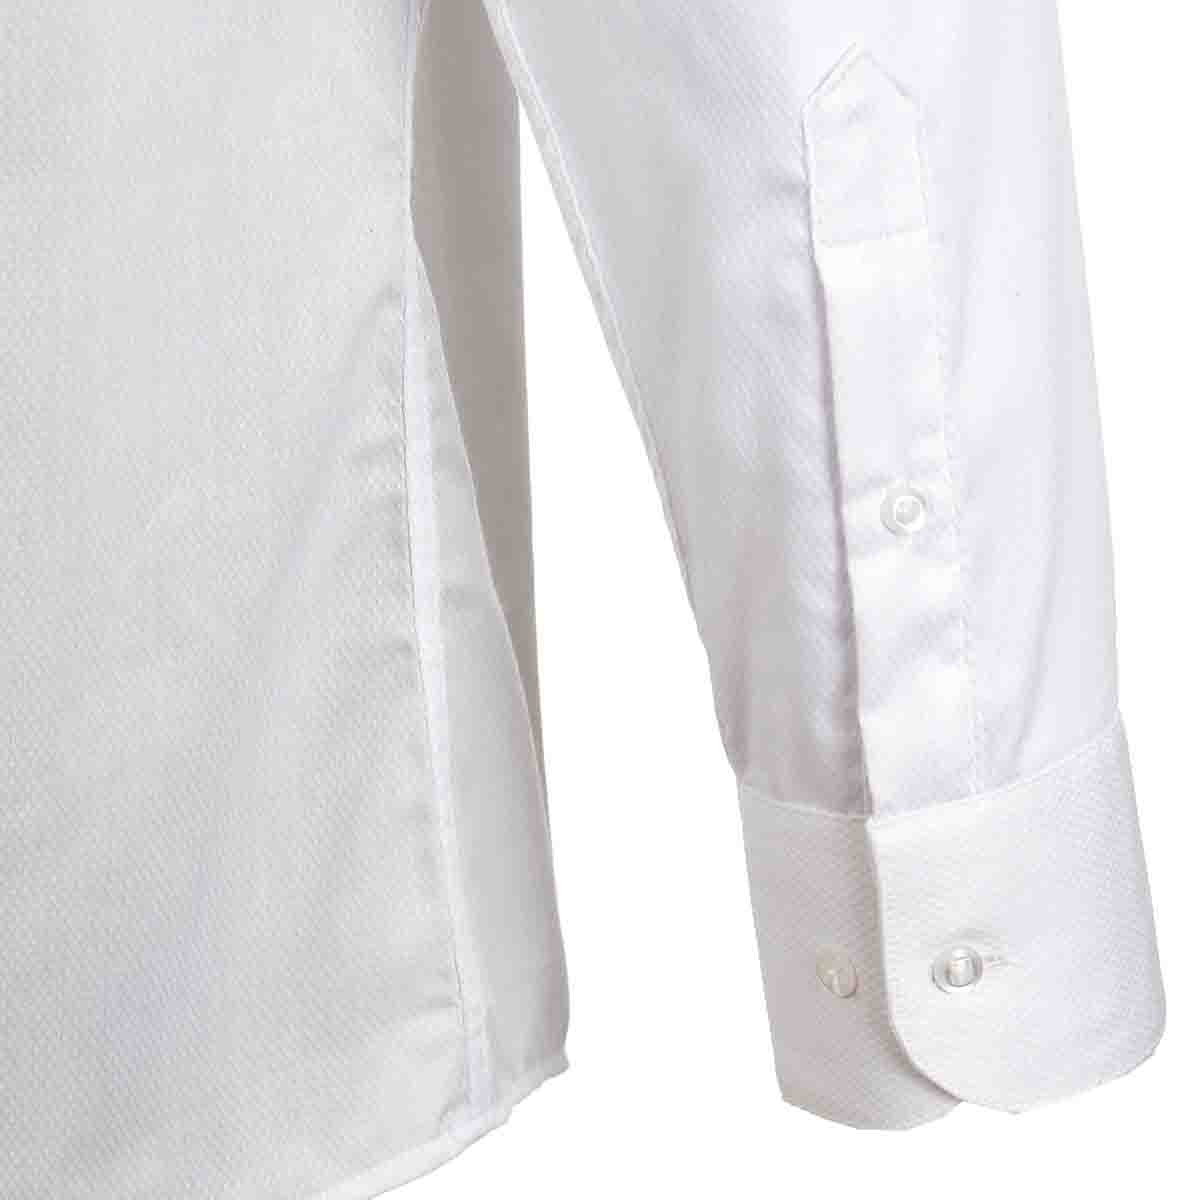 Camisa de Vestir Slim Fit Color Blanco Nina Ricci para Caballero